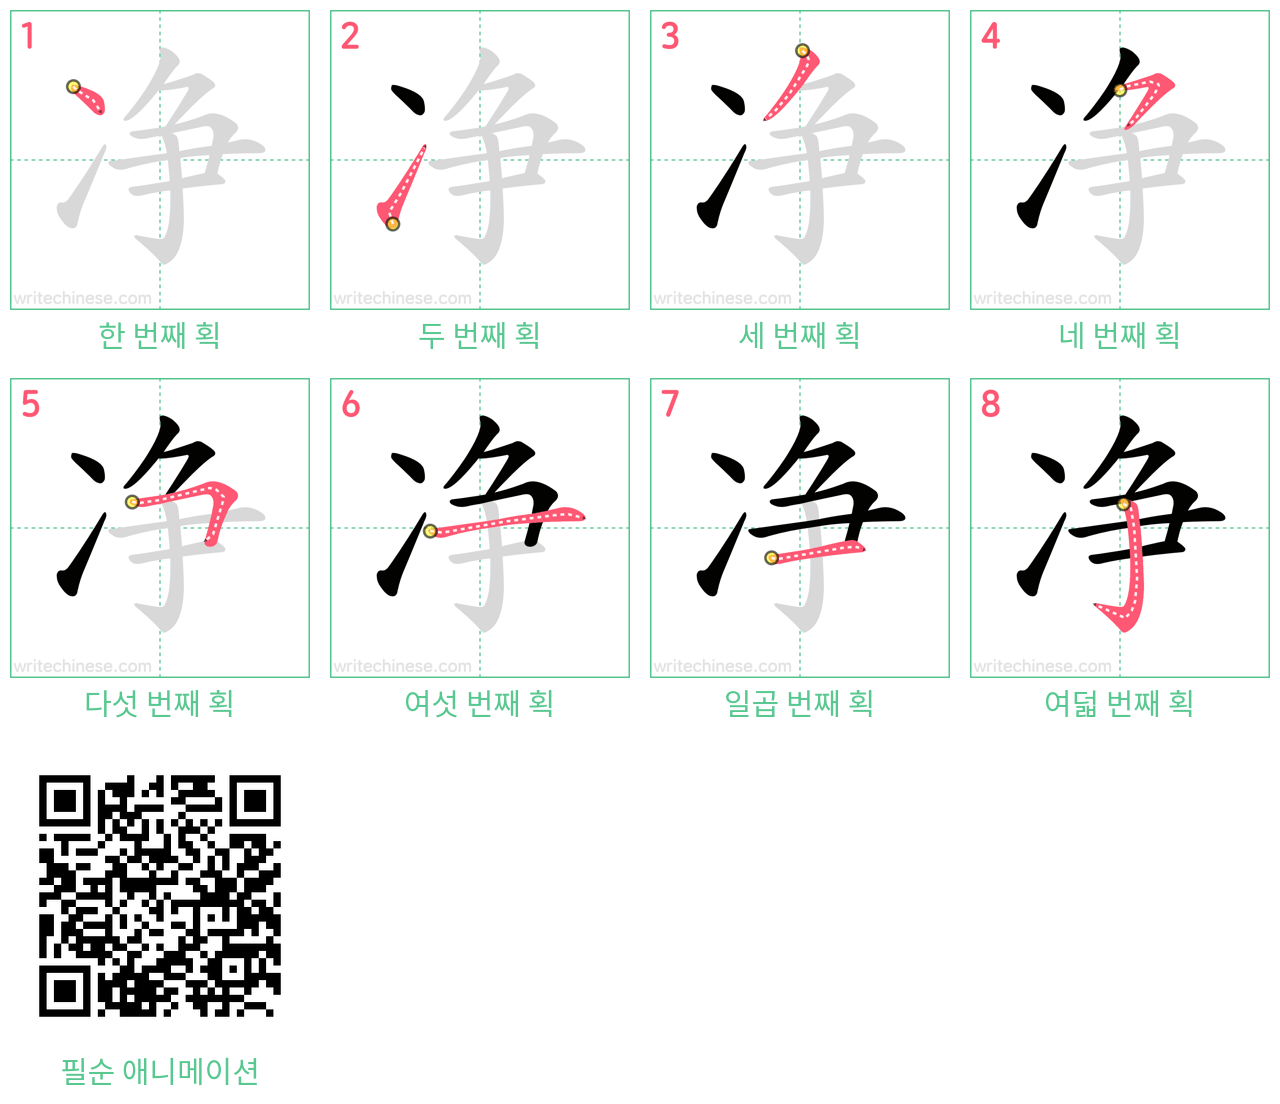 净 step-by-step stroke order diagrams